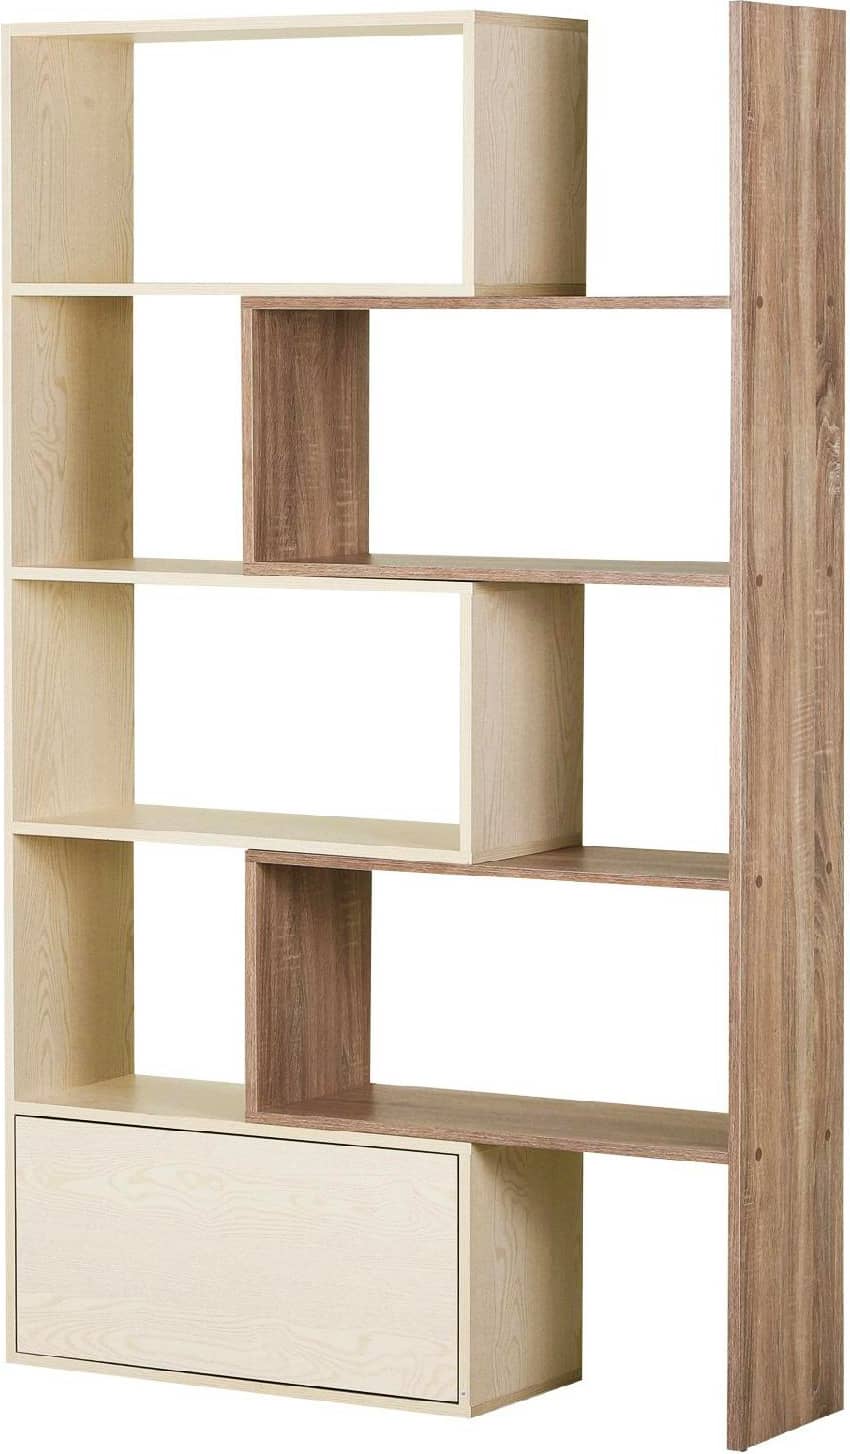 dechome 83611dak libreria scaffale a ripiani salvaspazio per soggiorno in legno 141x29x176 cm bianco rovere - 83611dak